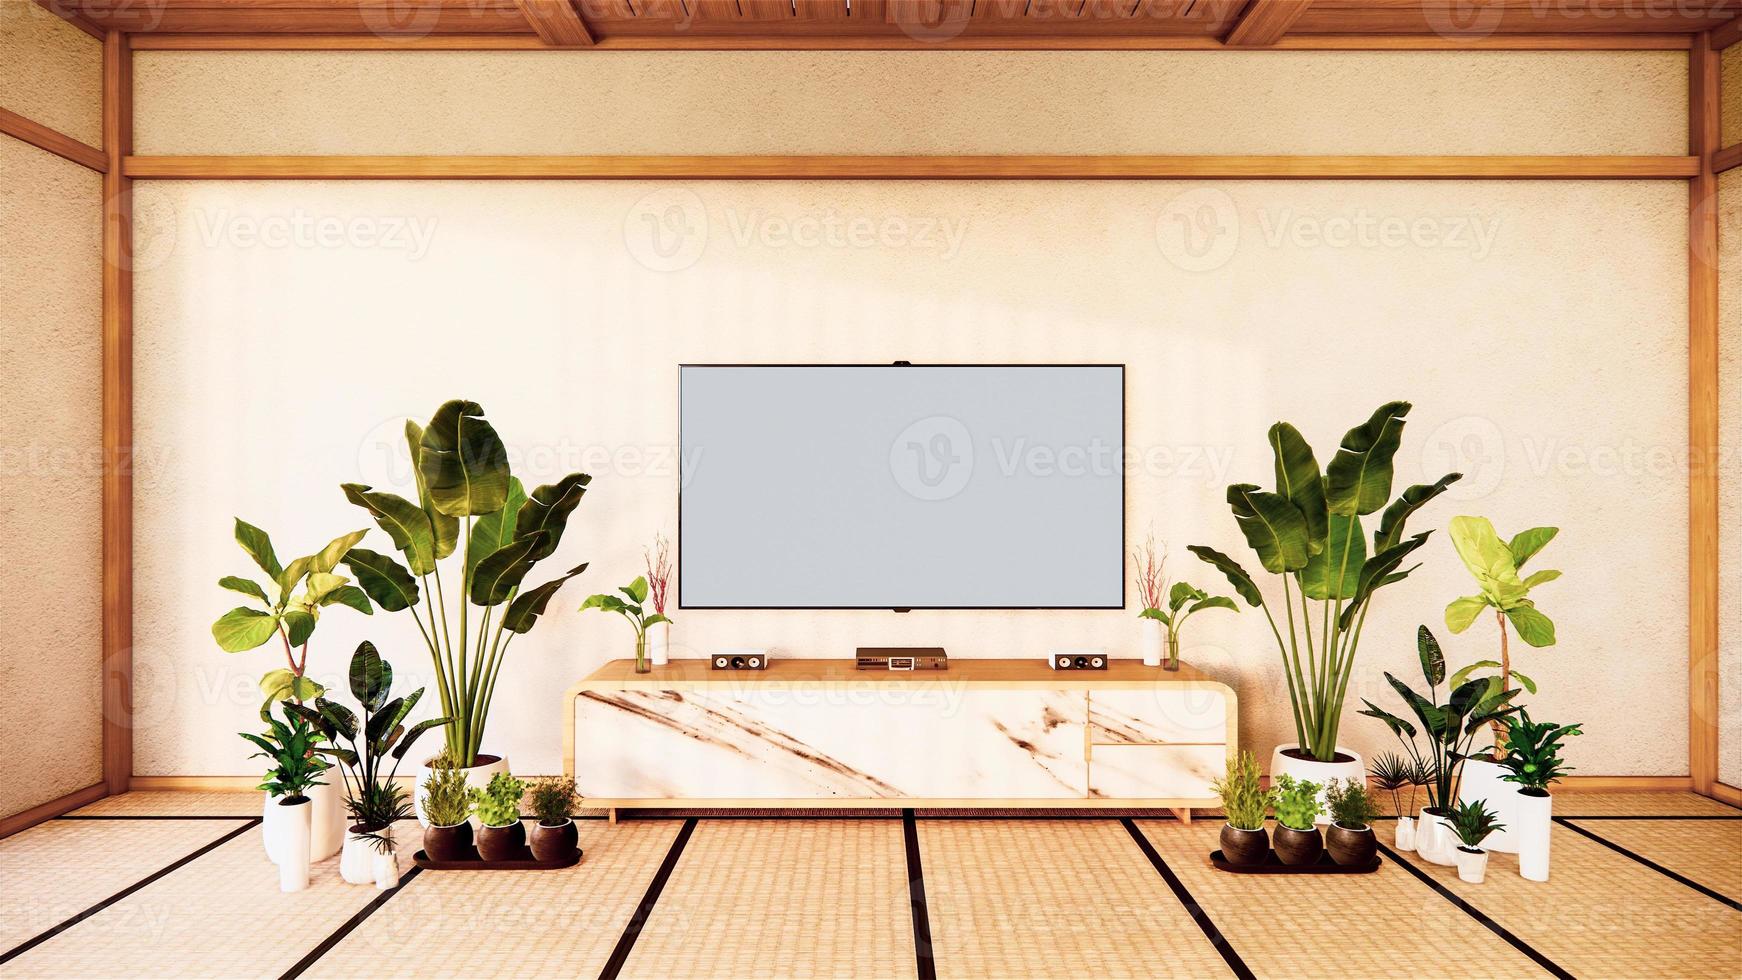 mobile tv in soggiorno giapponese su sfondo bianco parete, rendering 3d foto